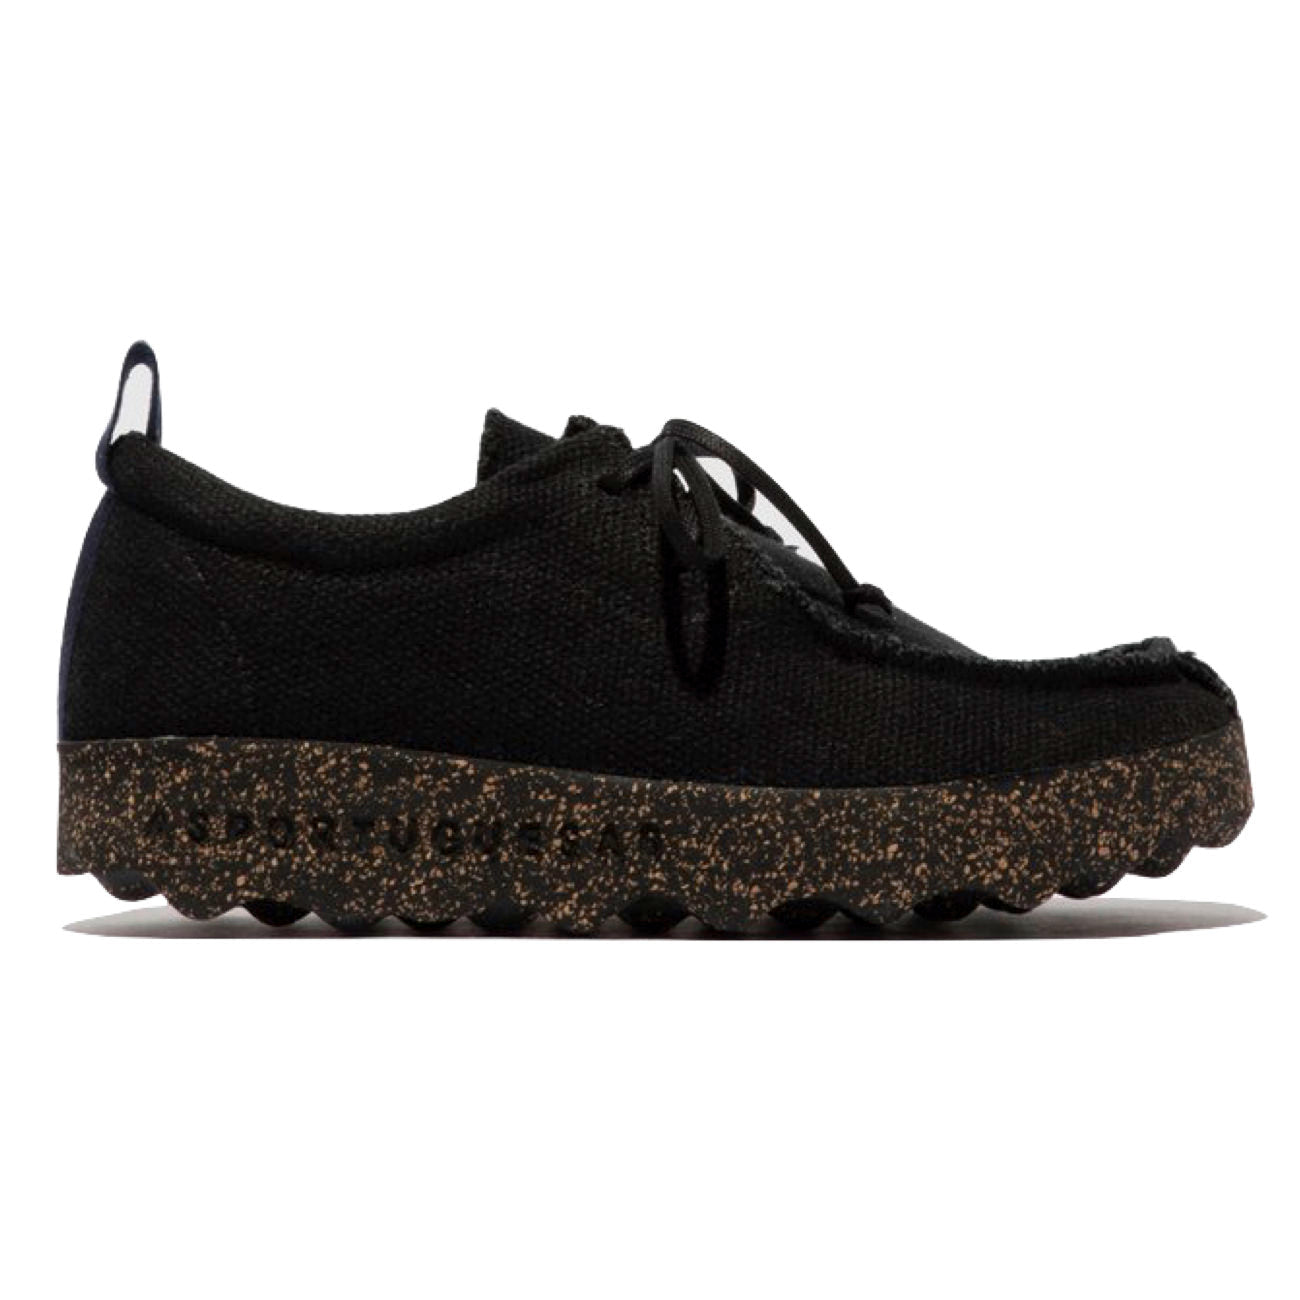 Asportuguesus, AS21 Chat, Laceup Shoes, Black Linen & Black sole Shoes Asportuguesas Black Linen & Black sole 37 